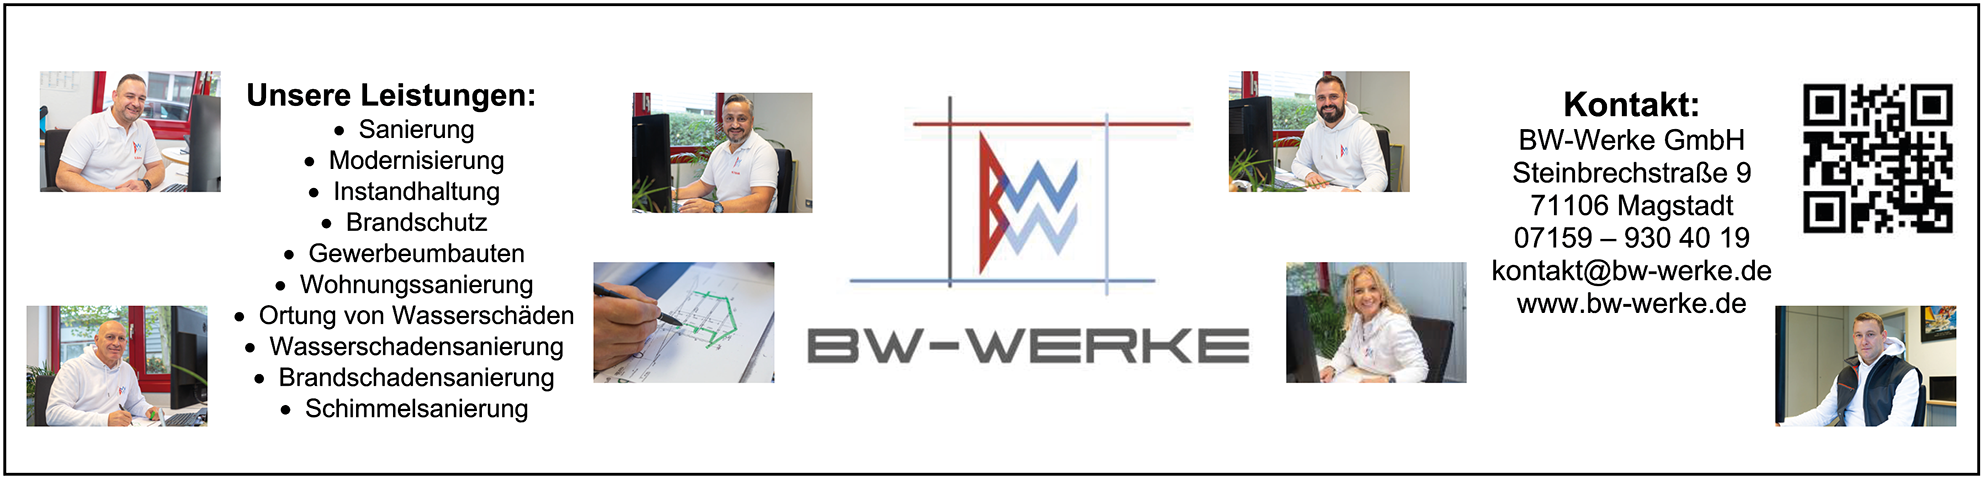 BW-Werke